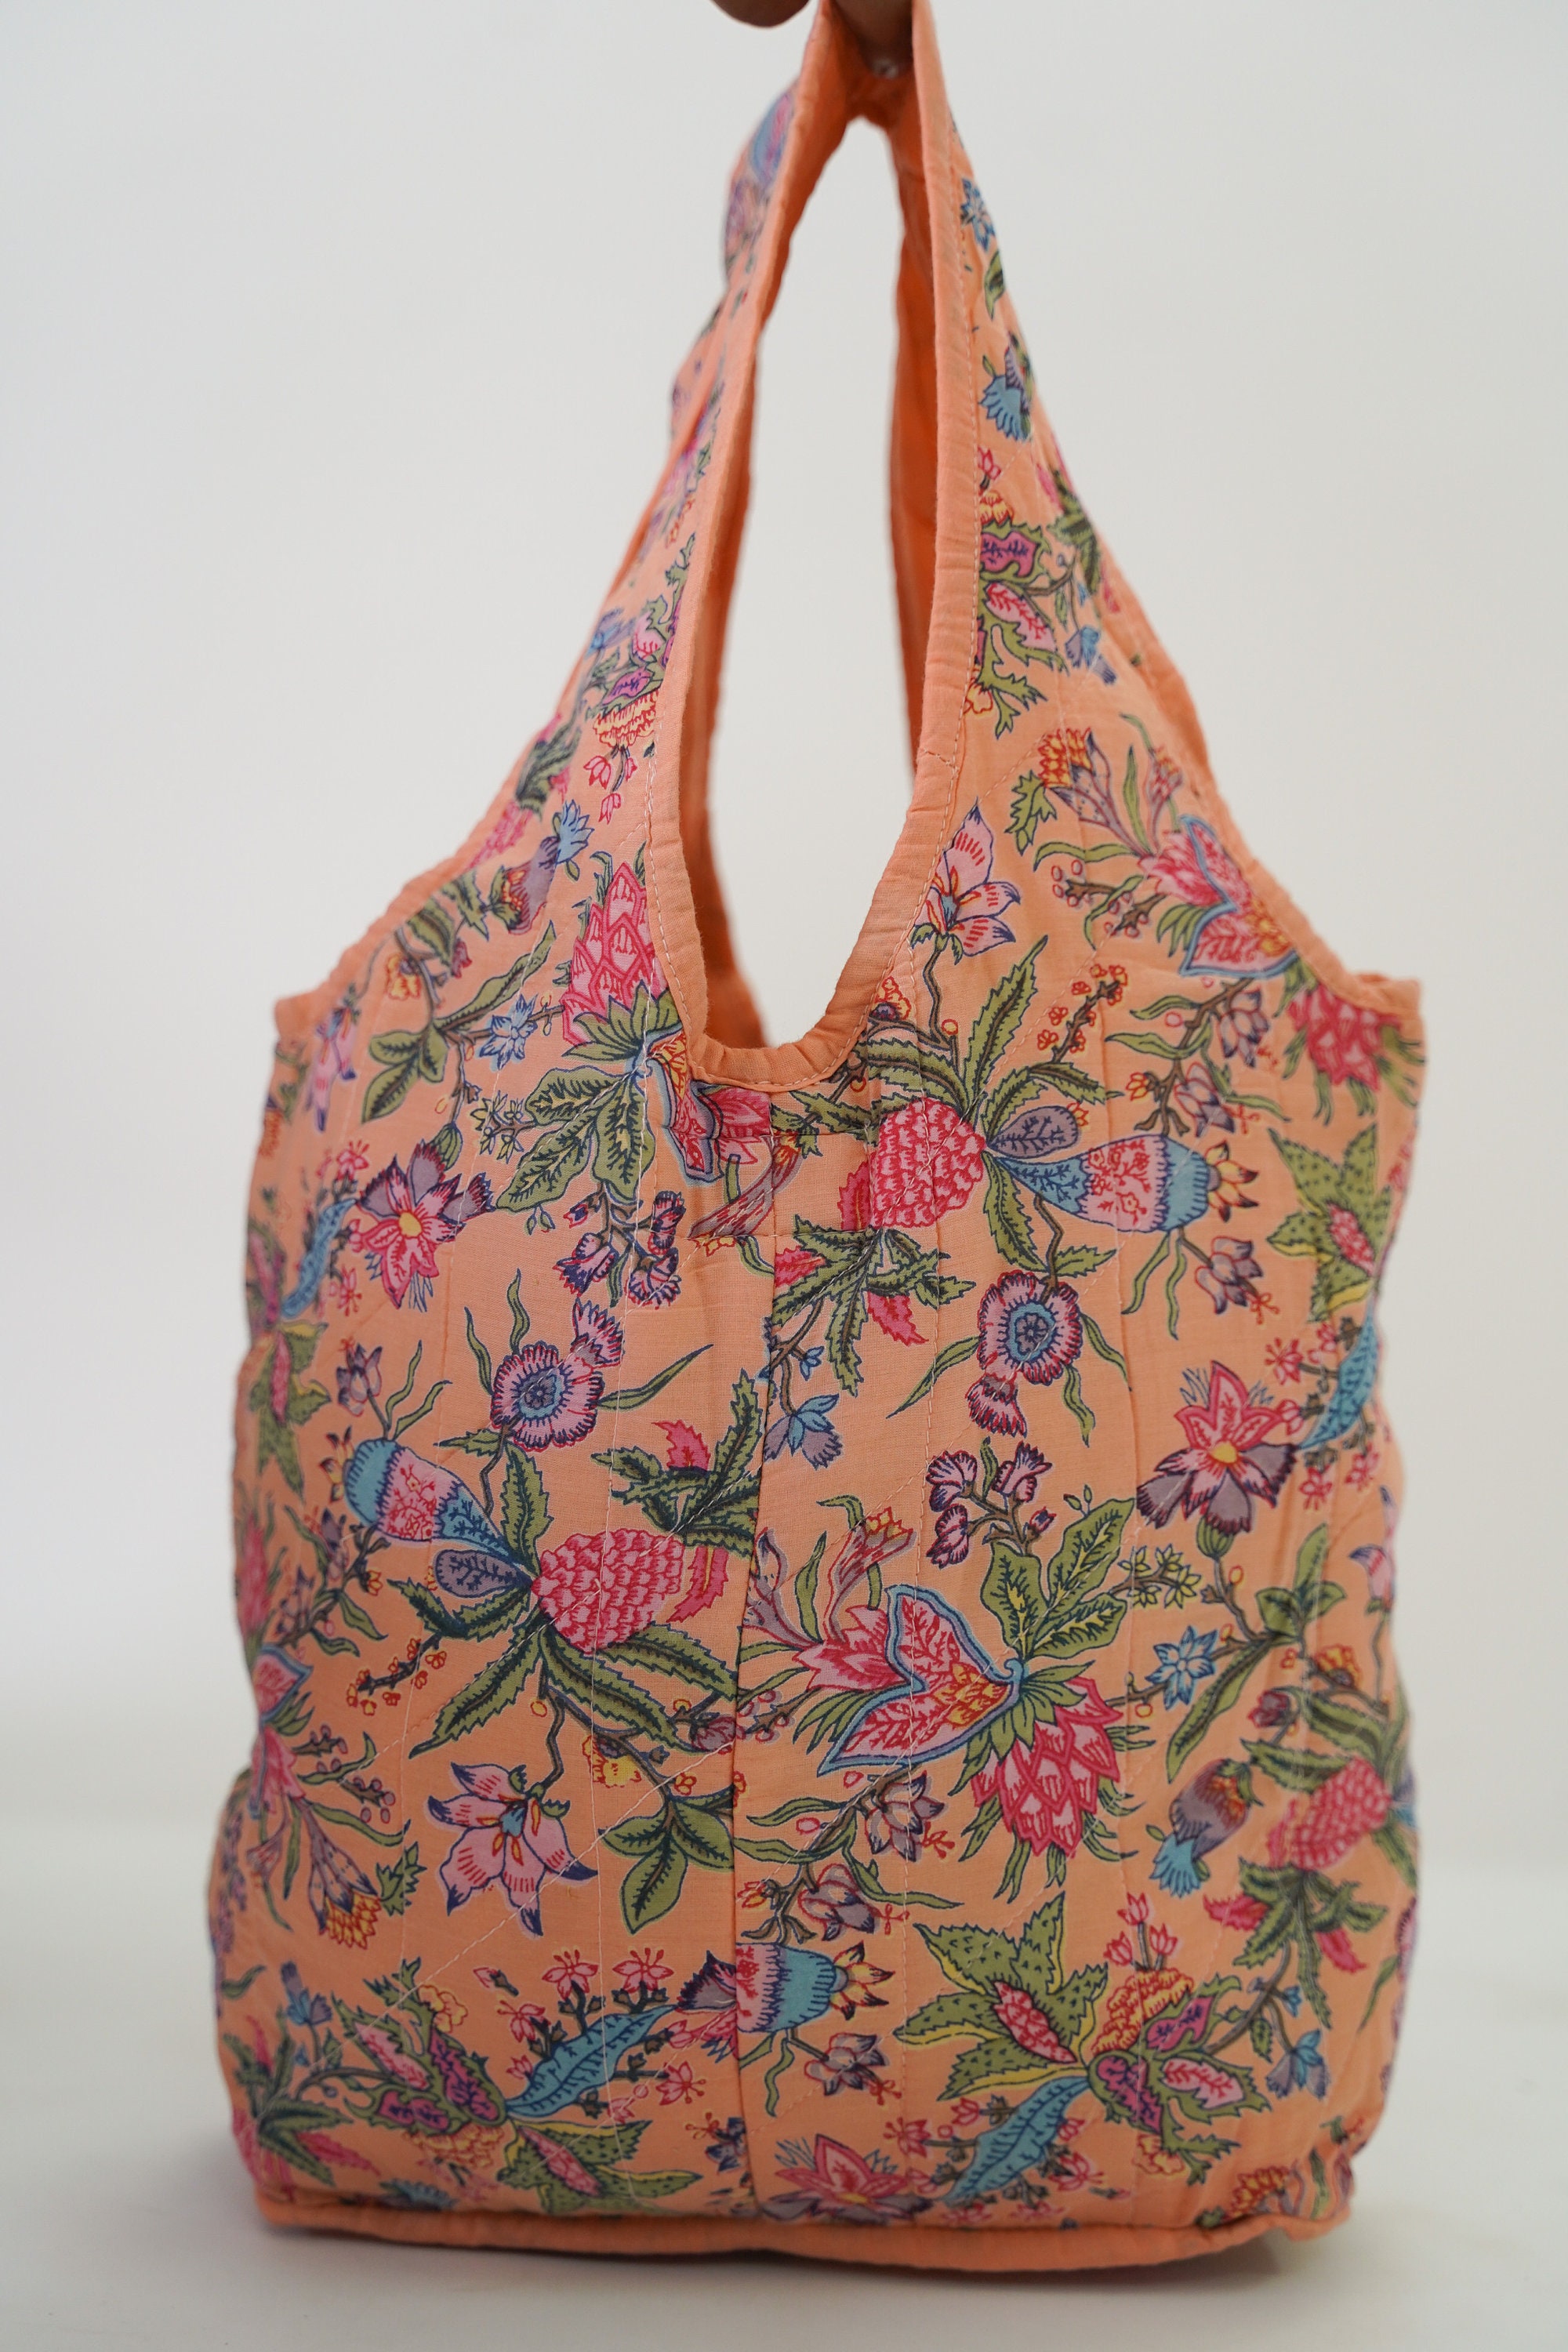 Floral Printed Bag Elegant Indian Designer Bag Traditional 